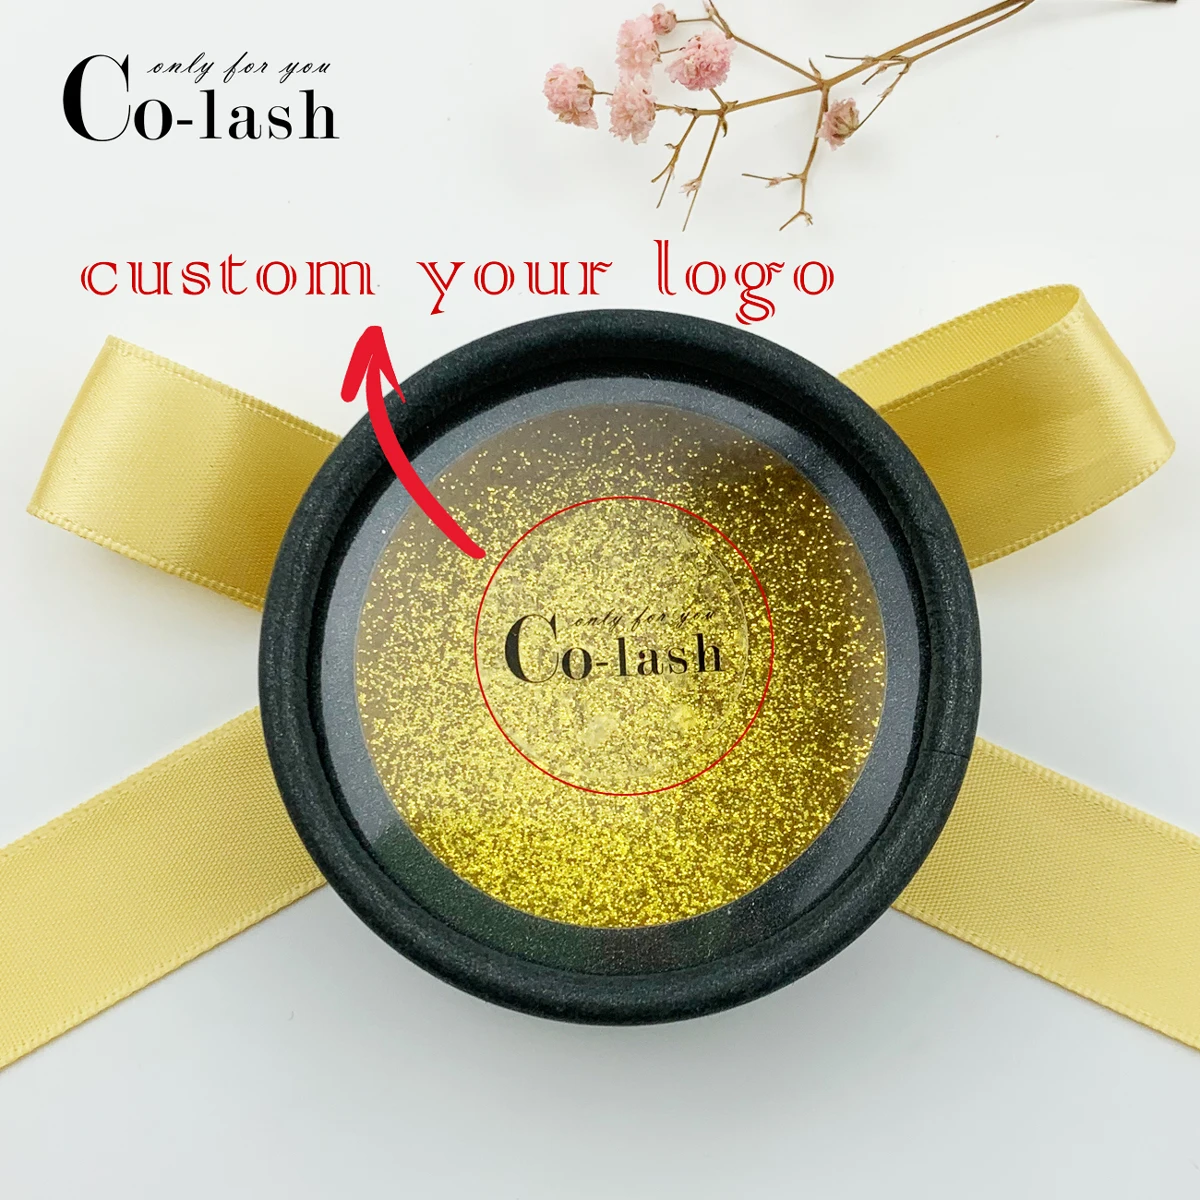 Colash сделать свой собственный логотип на заказ 5D норковые ресницы круглая бумага Чехол коробка с частный логотип для оптового whalesale заказа